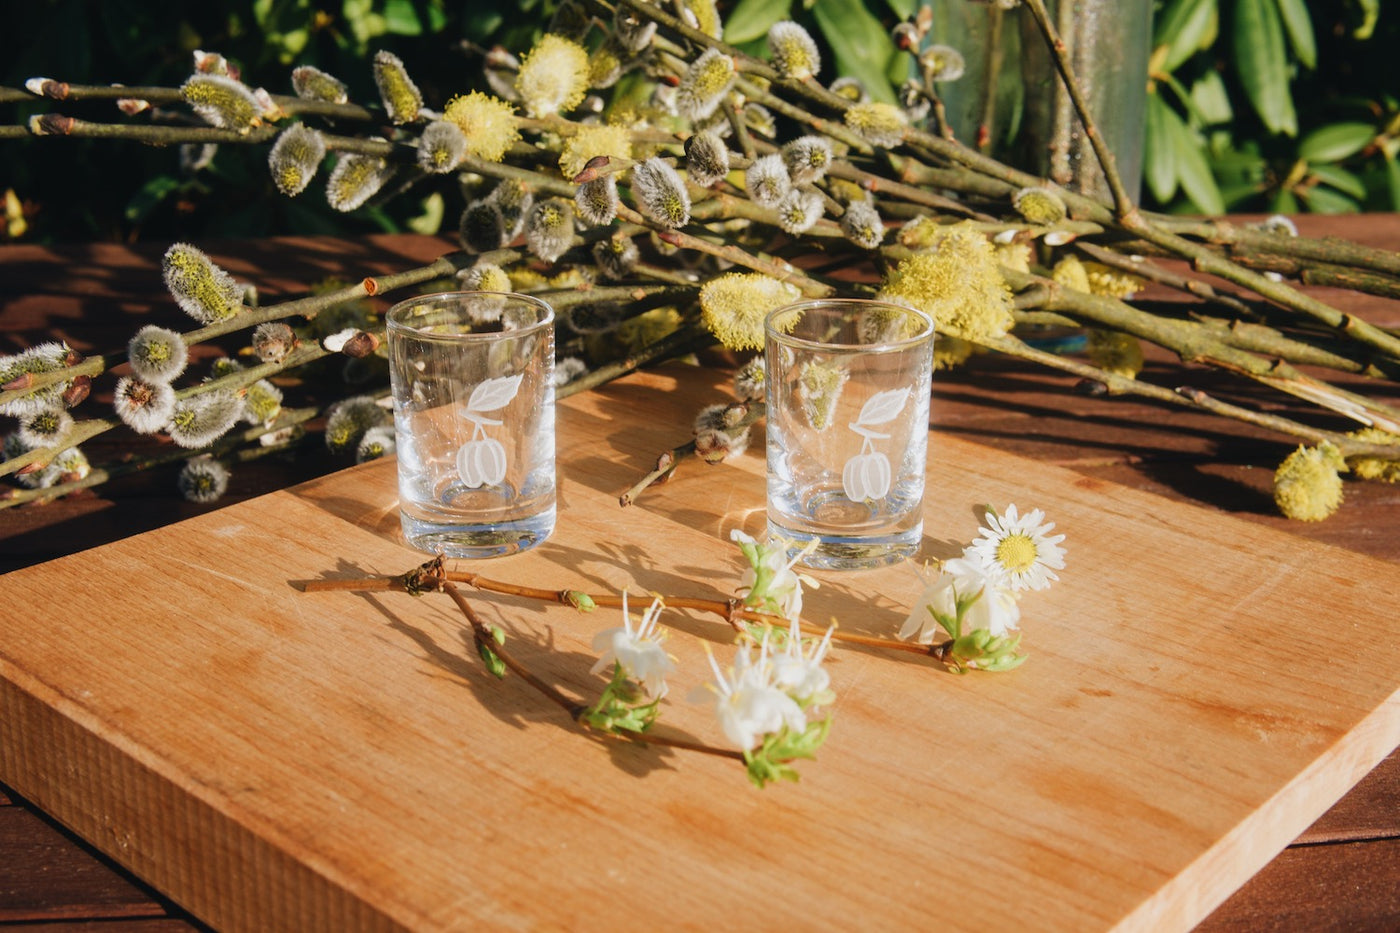 Skleněné štamprle na slivovici 30 ml Ateliér Žampach s pískovanými motivy švestky s jarními květinami na dřevěném podnose